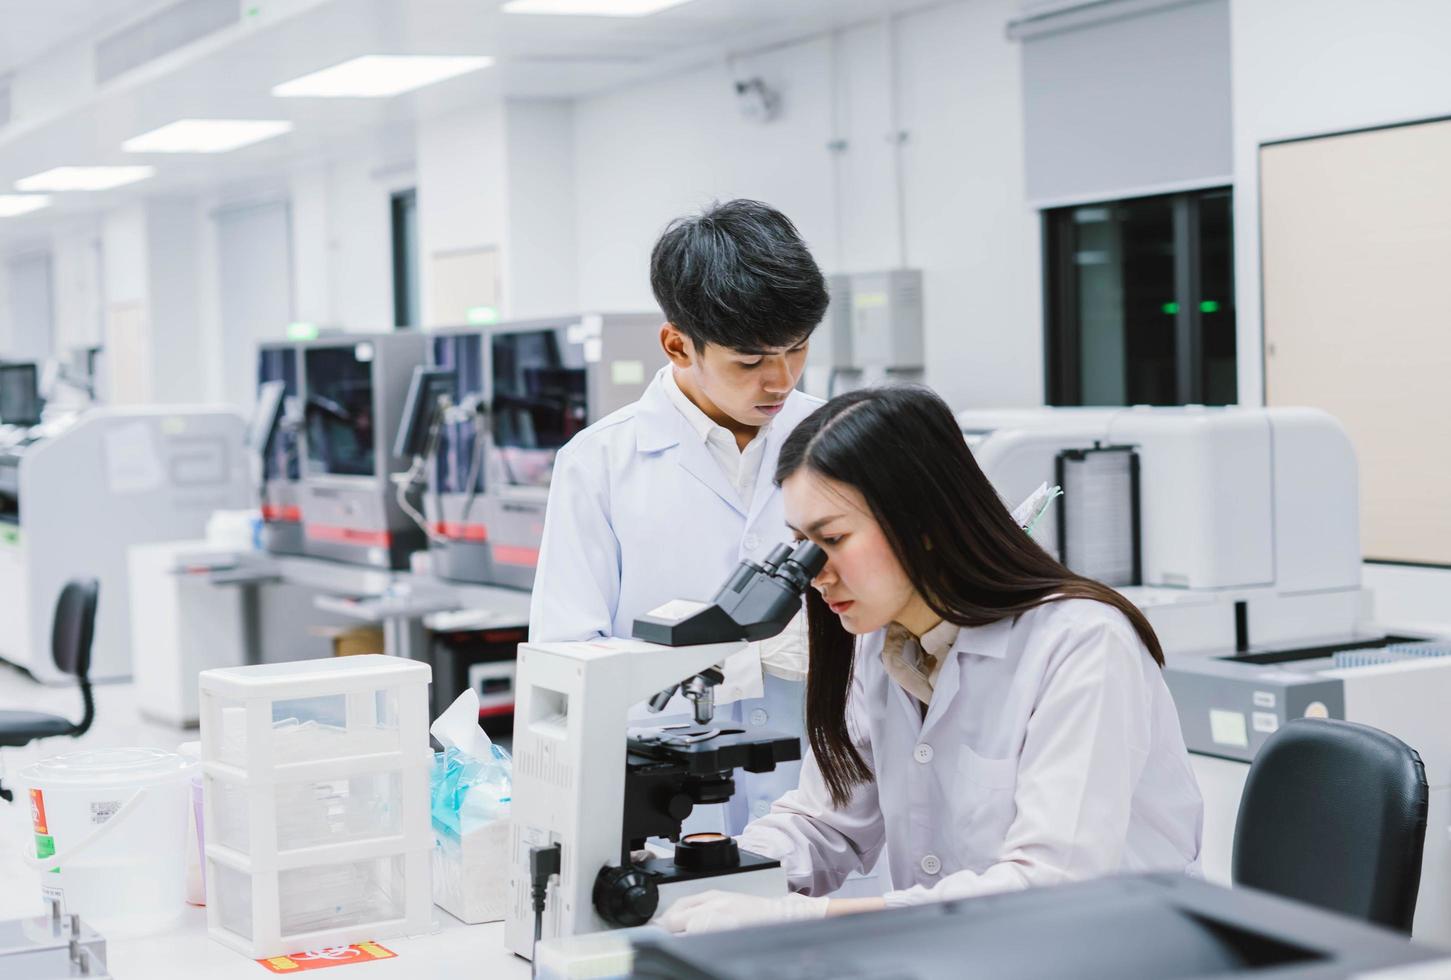 Zwei medizinische Wissenschaftler, die im medizinischen Labor arbeiten, junge Wissenschaftlerin, die sich das Mikroskop ansieht. Fokus auf junge Wissenschaftlerinnen wählen foto